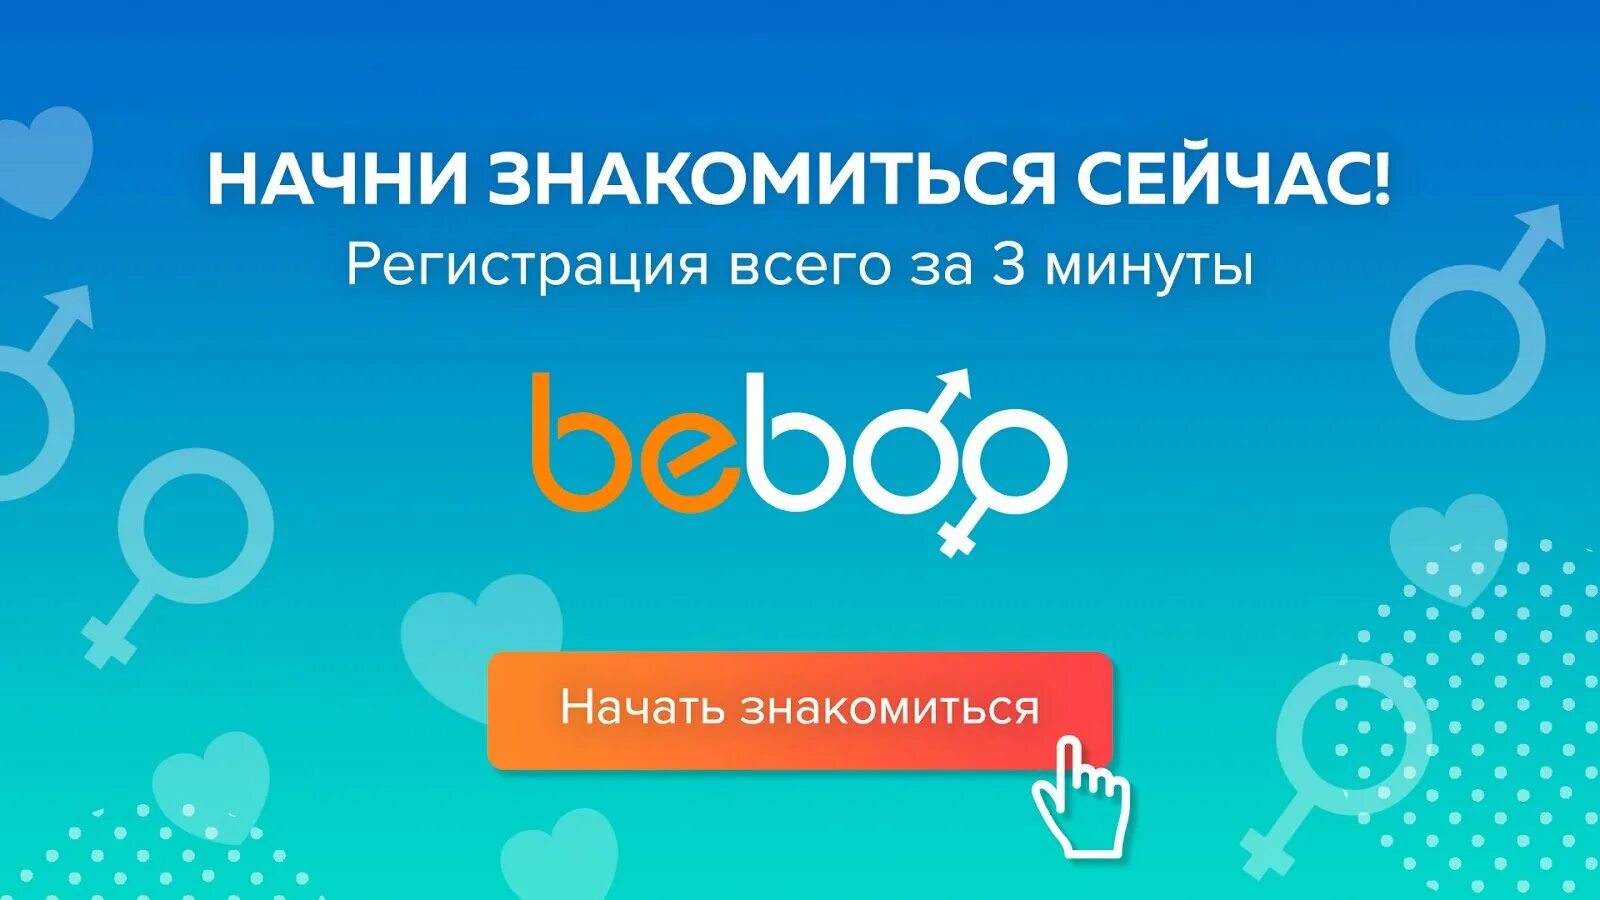 Бесплатный сайт знакомств бебоо. Бебоо. Бедоо. Beboo лого. Ru.Beboo.Reload.